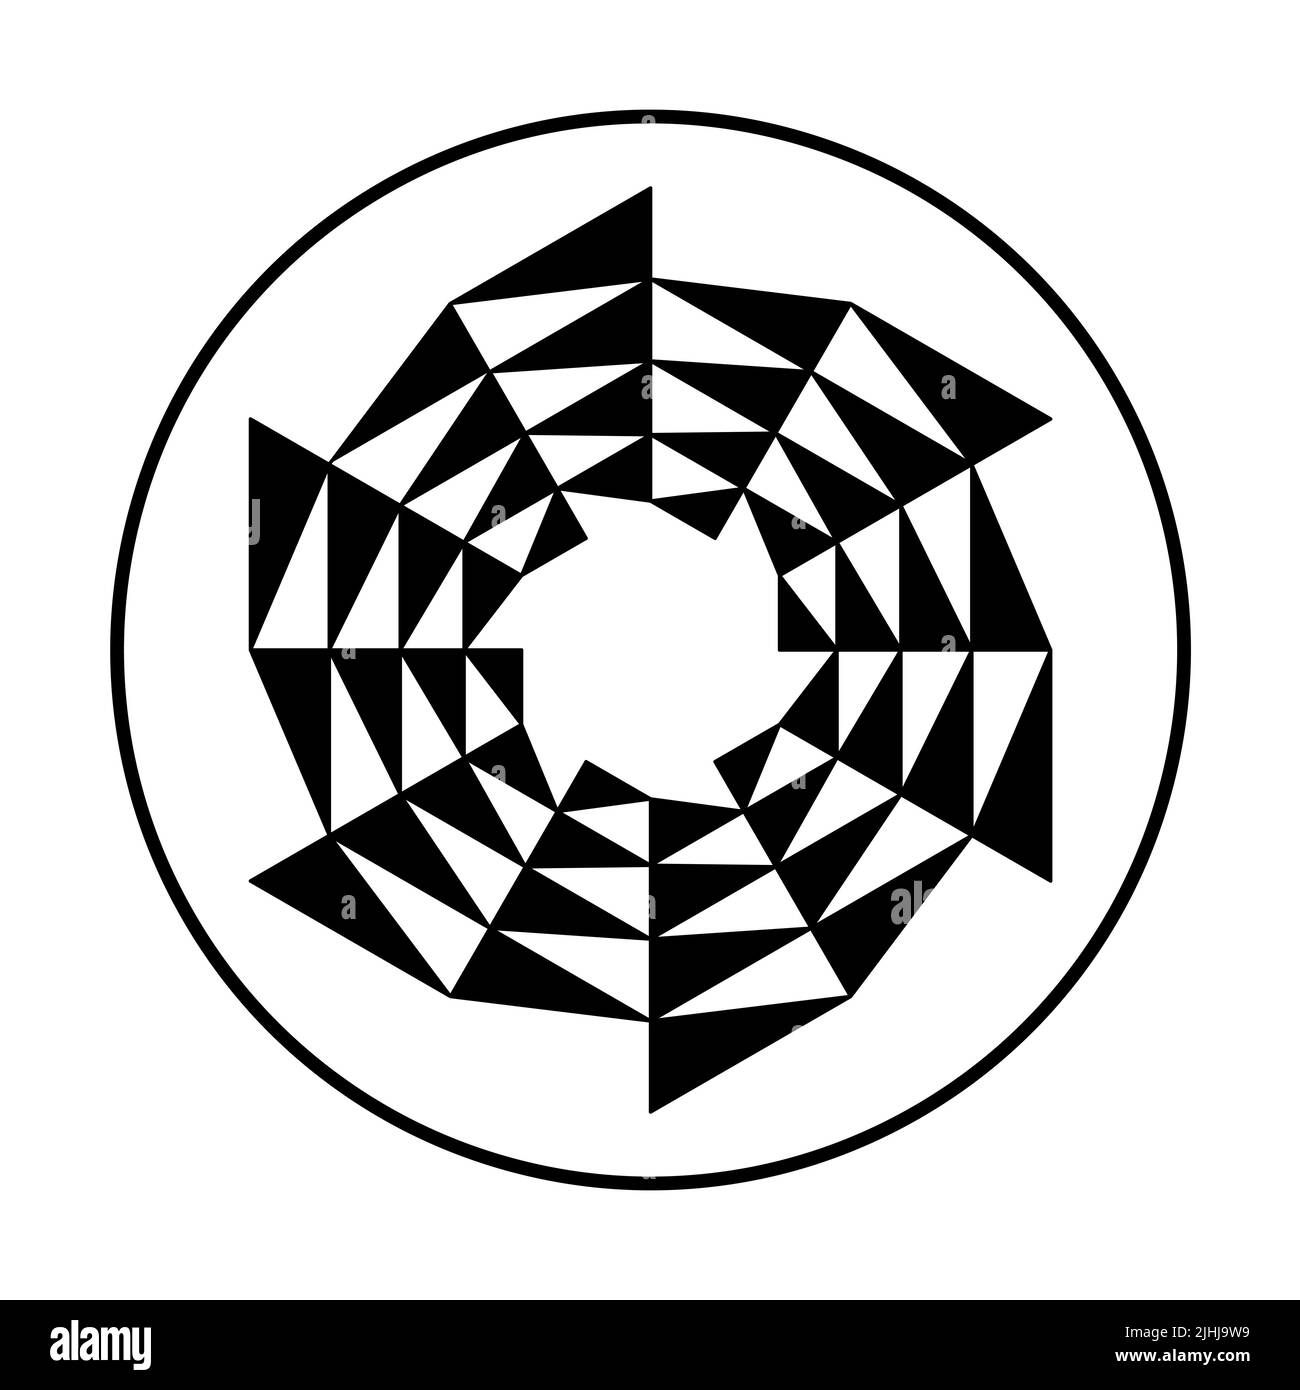 En forme de lame de scie circulaire, en forme de triangle dans un cercle. Triangles noirs formant une lame de scie circulaire, se déplaçant dans le sens des aiguilles d'une montre, comme symbole de changement. Banque D'Images